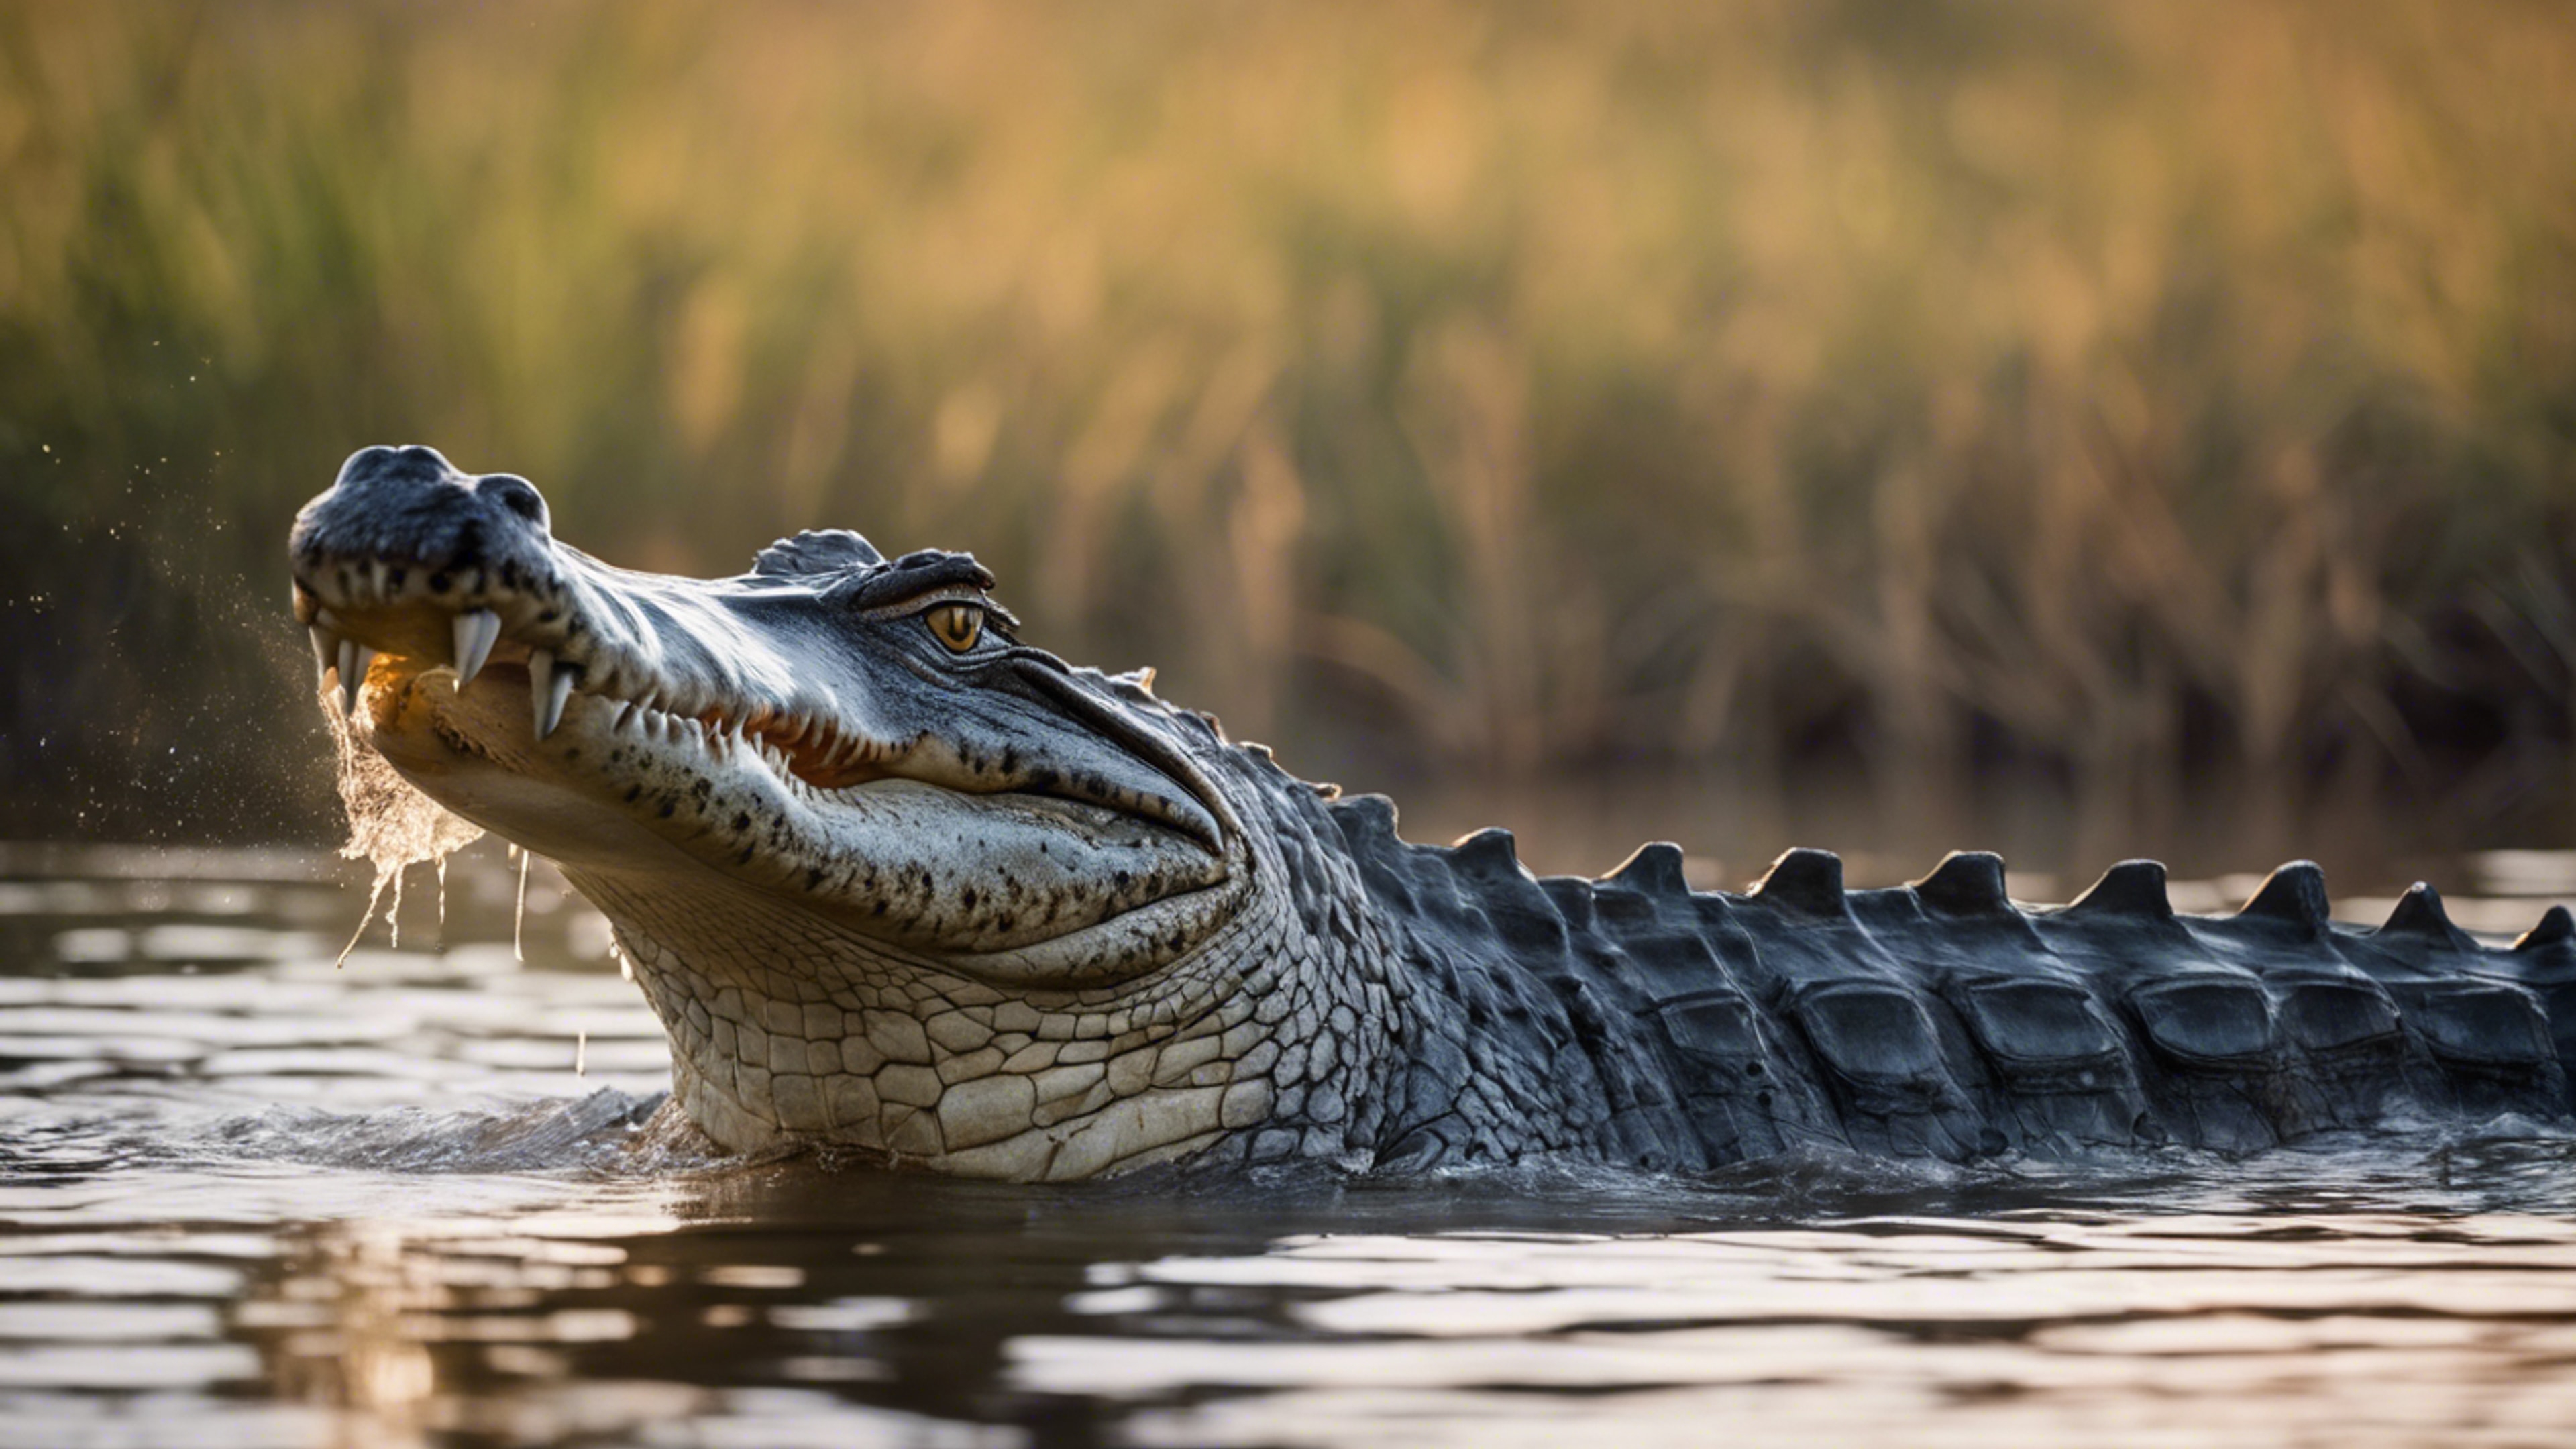 A glorious scene of a crocodile in the heart of the Okavango Delta. Tapet[926204686e5b483ca4a6]